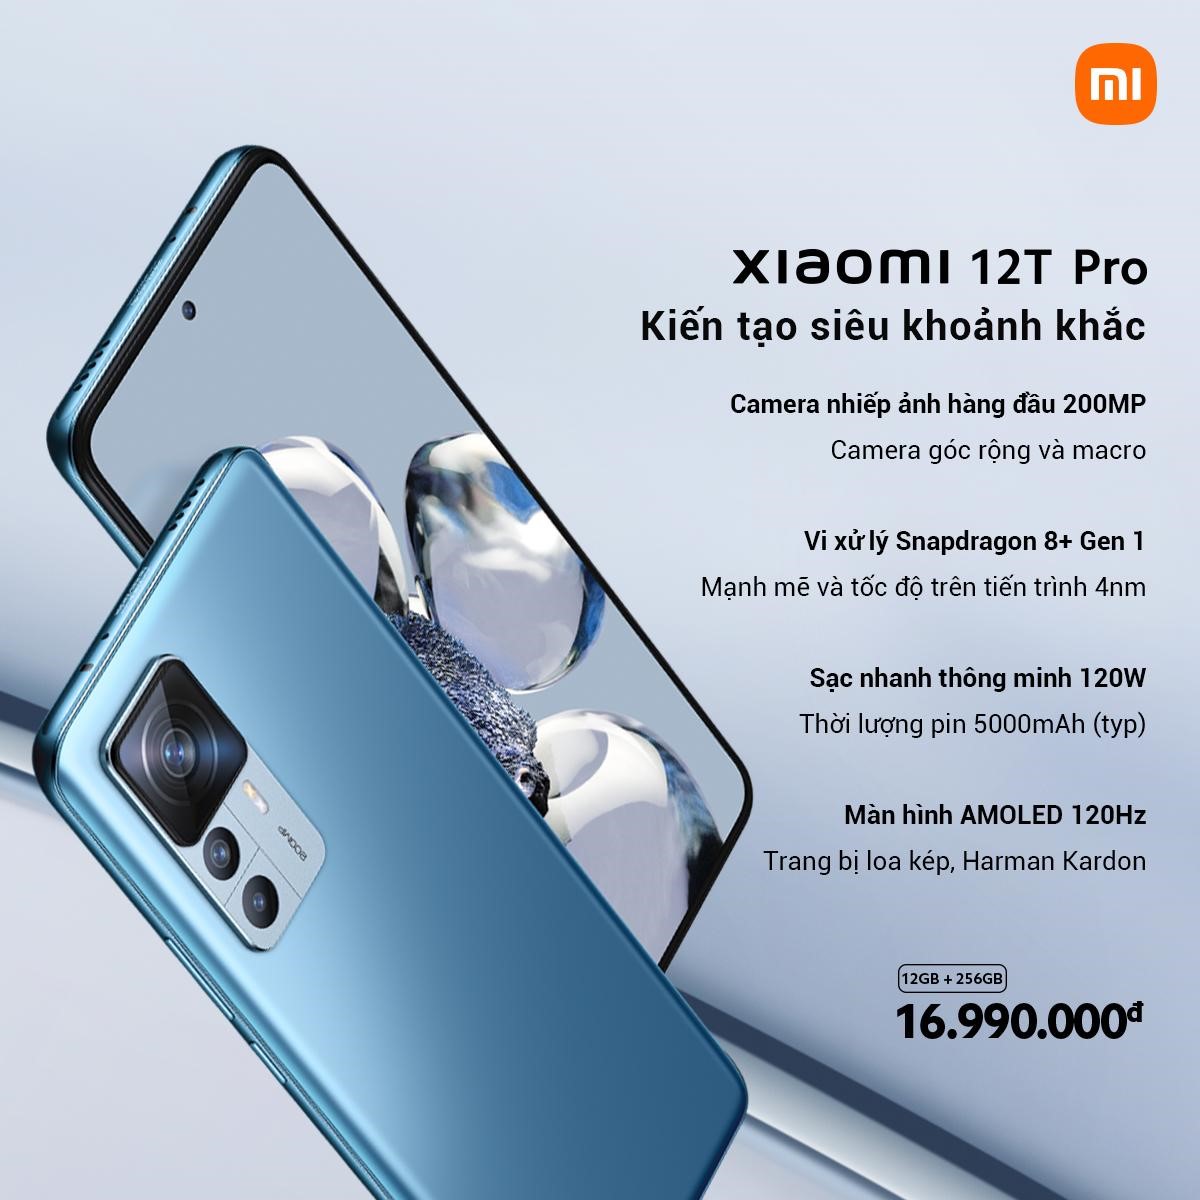 Xiaomi-12T-Pro-kien-tao-khoanh-khac.jpg